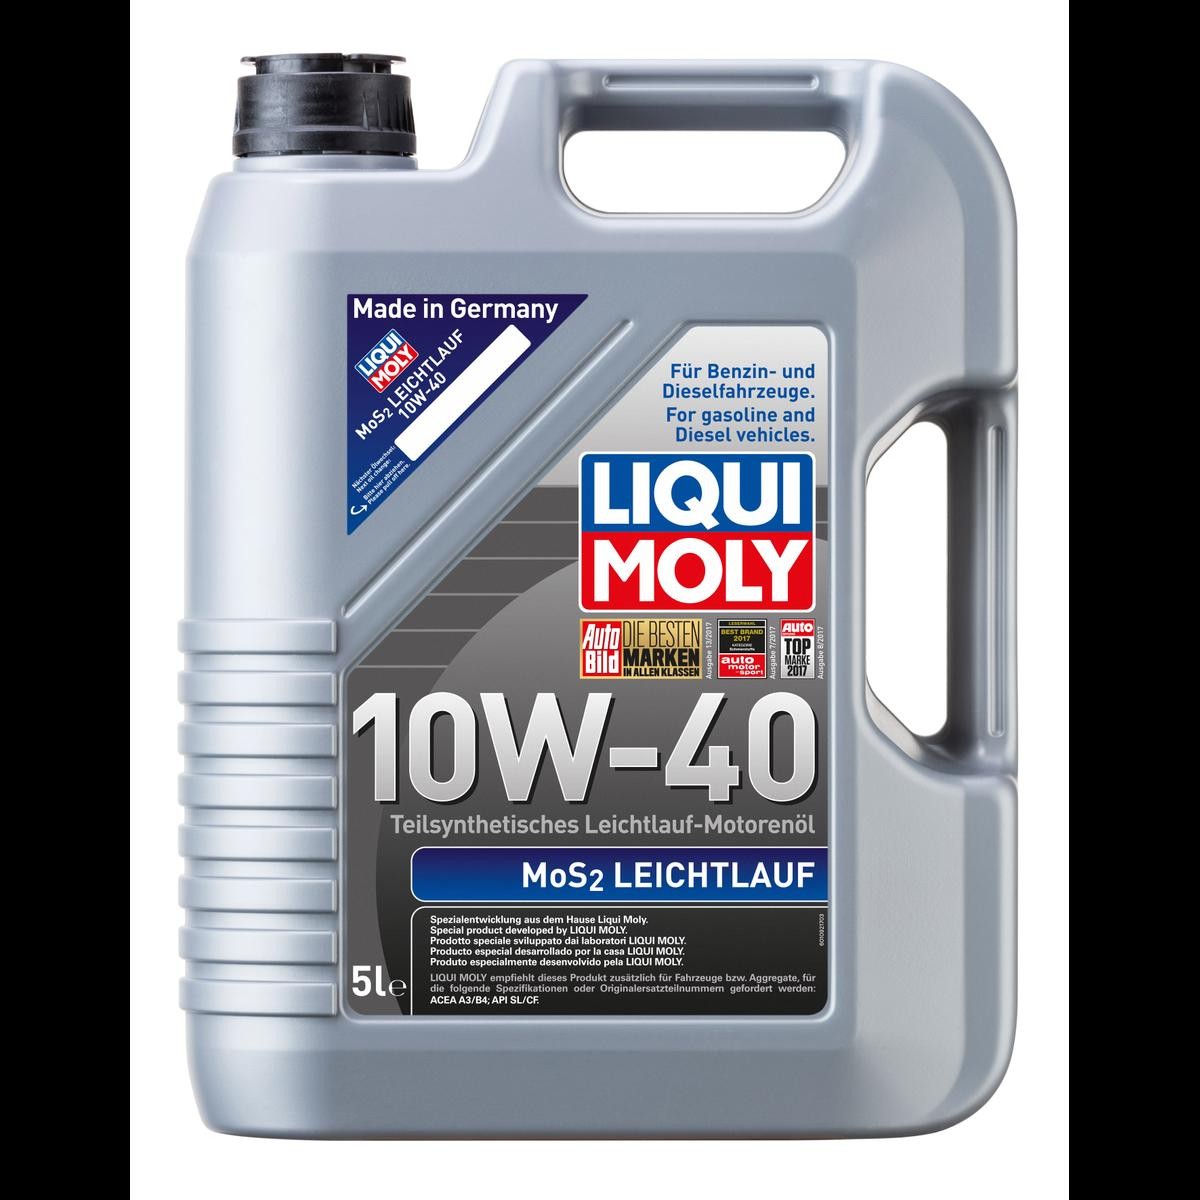 LIQUI MOLY МoS2, Leichtlauf 10W-40, 5L, aceite parcialmente sintético Aceite para motor 1092 comprar online